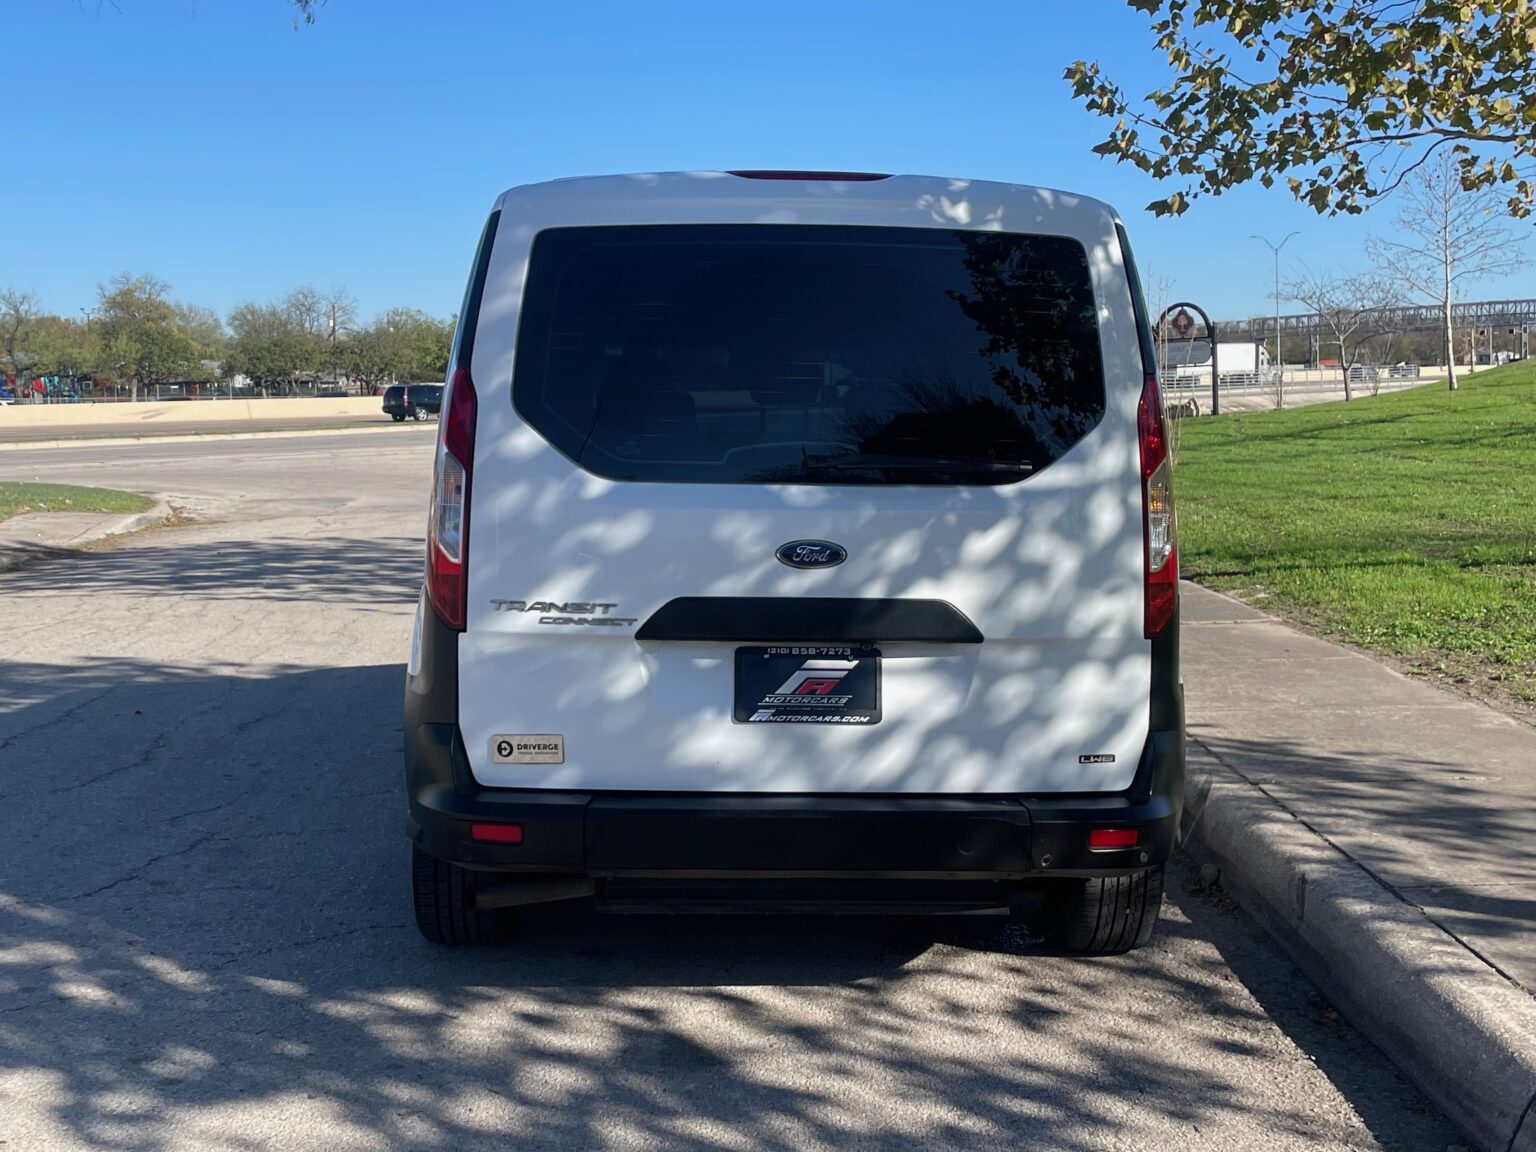 Ford Mobility Van / Handicap Van